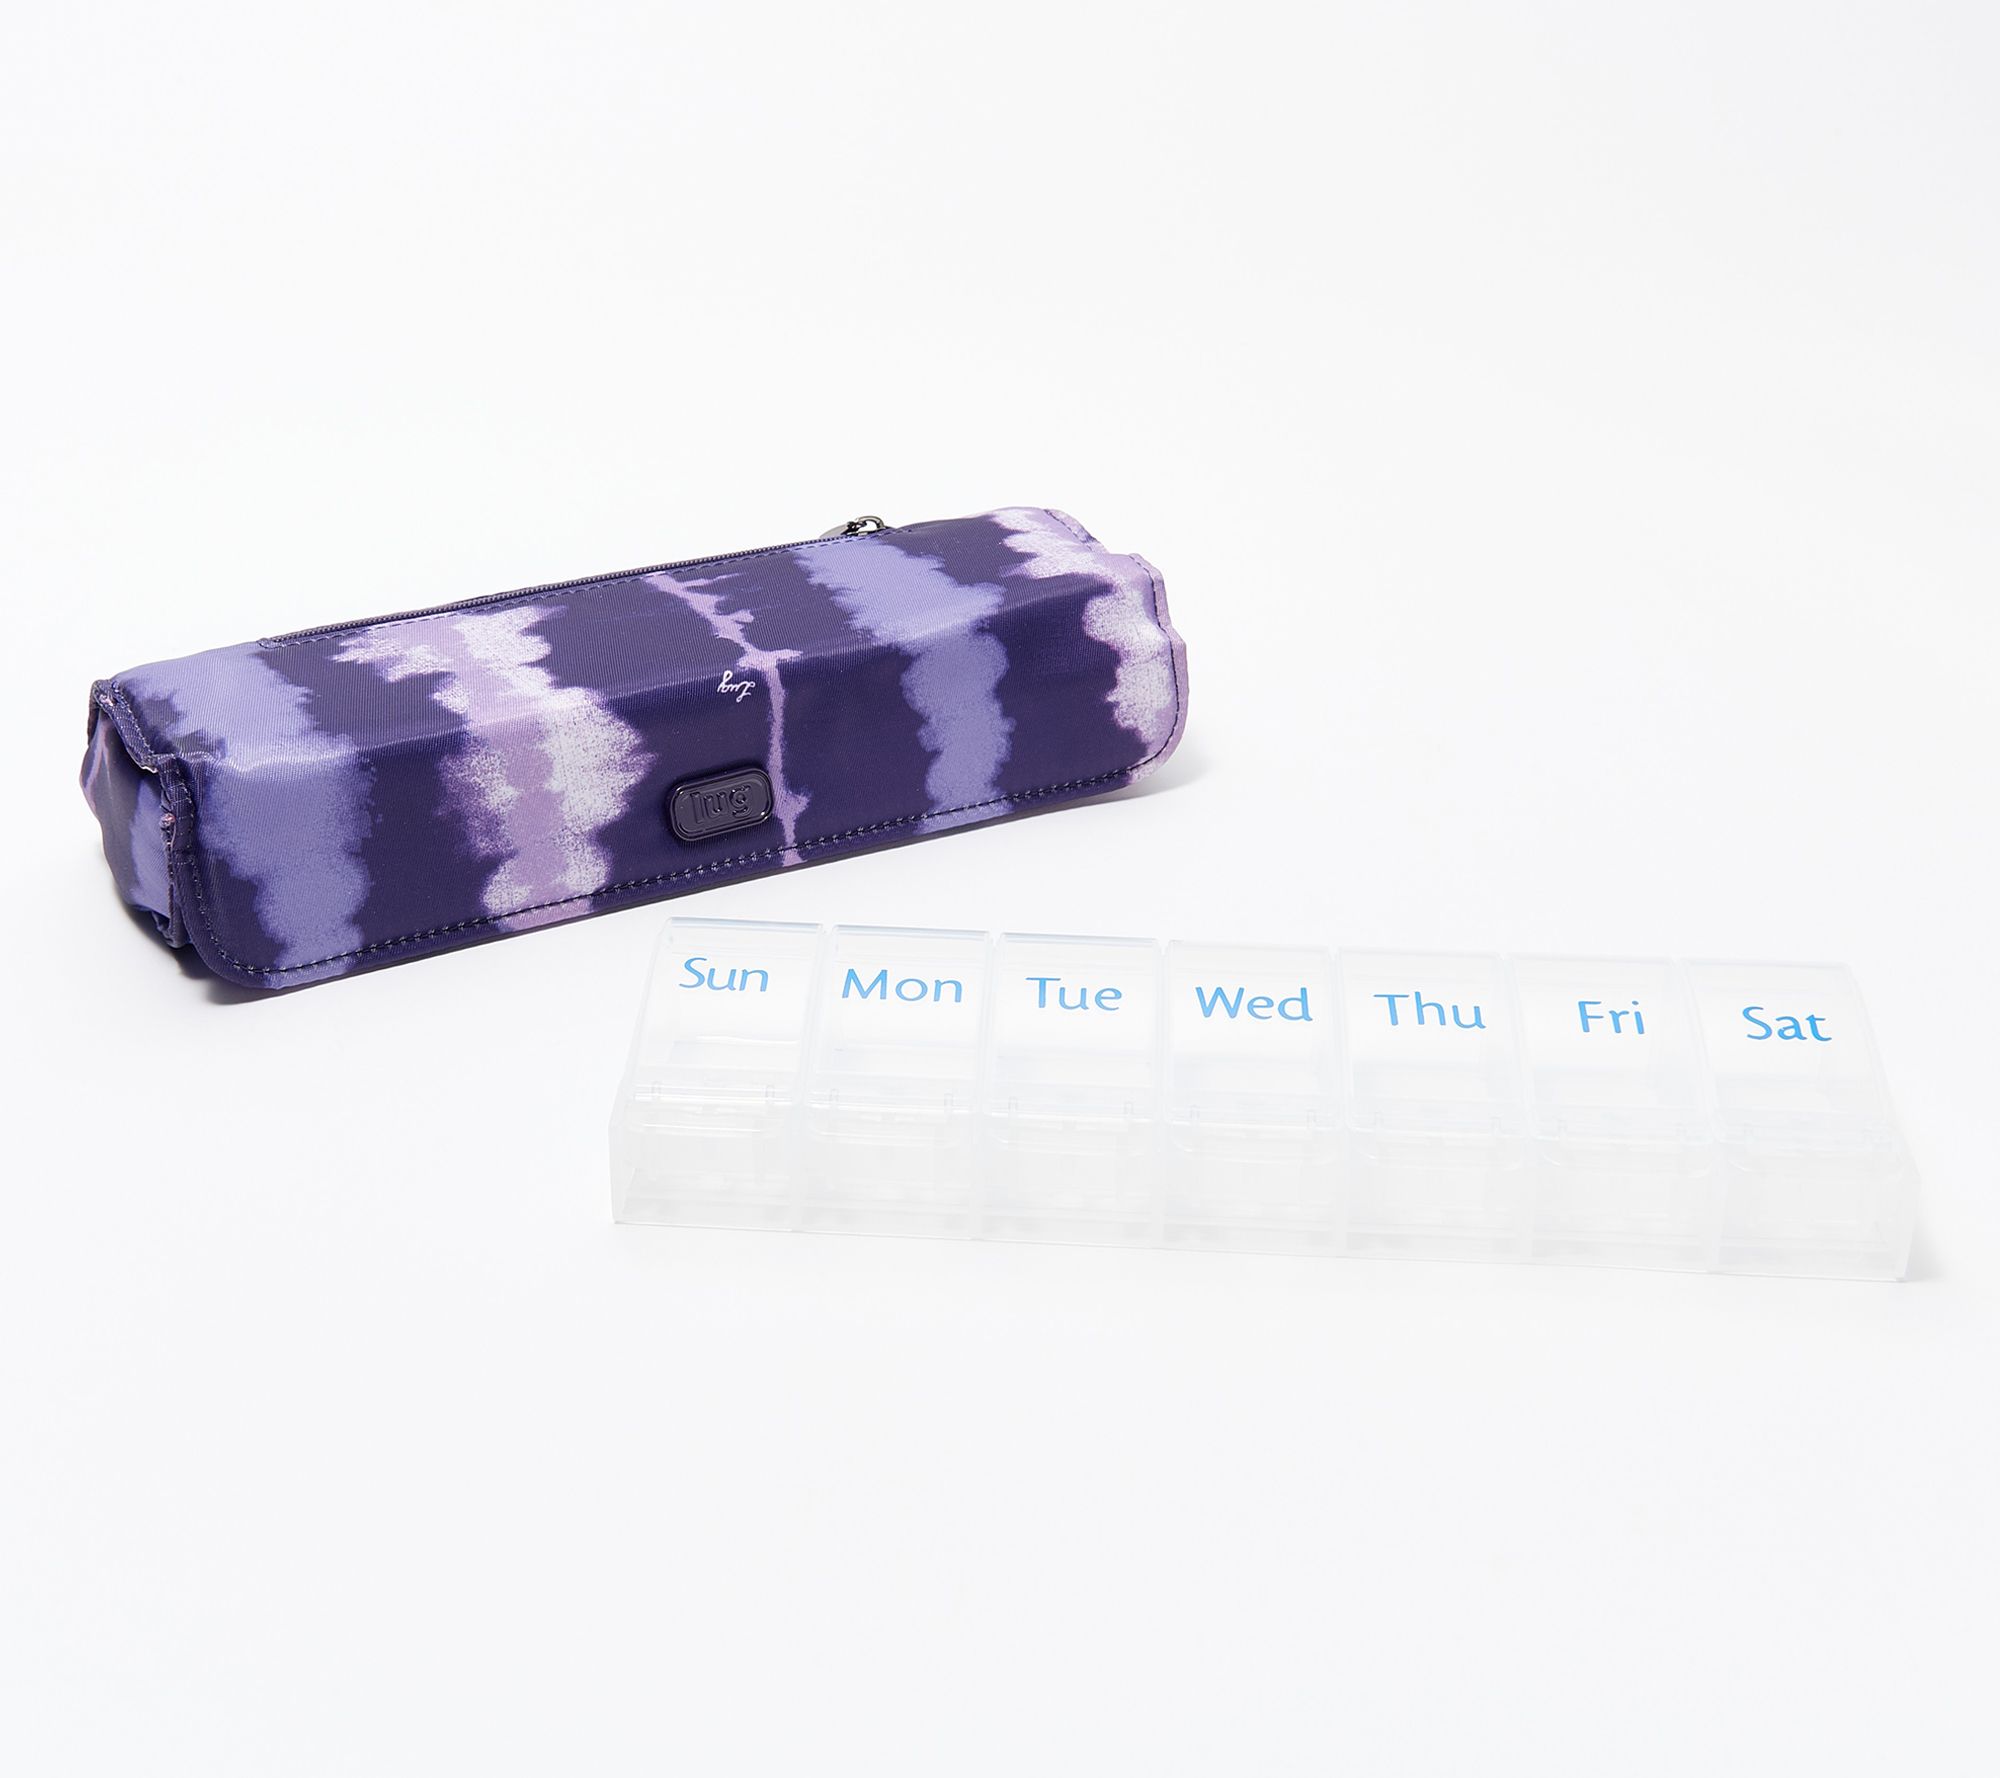 Lug Pill Organizer Case with Zip Pocket - Choo Choo XL 